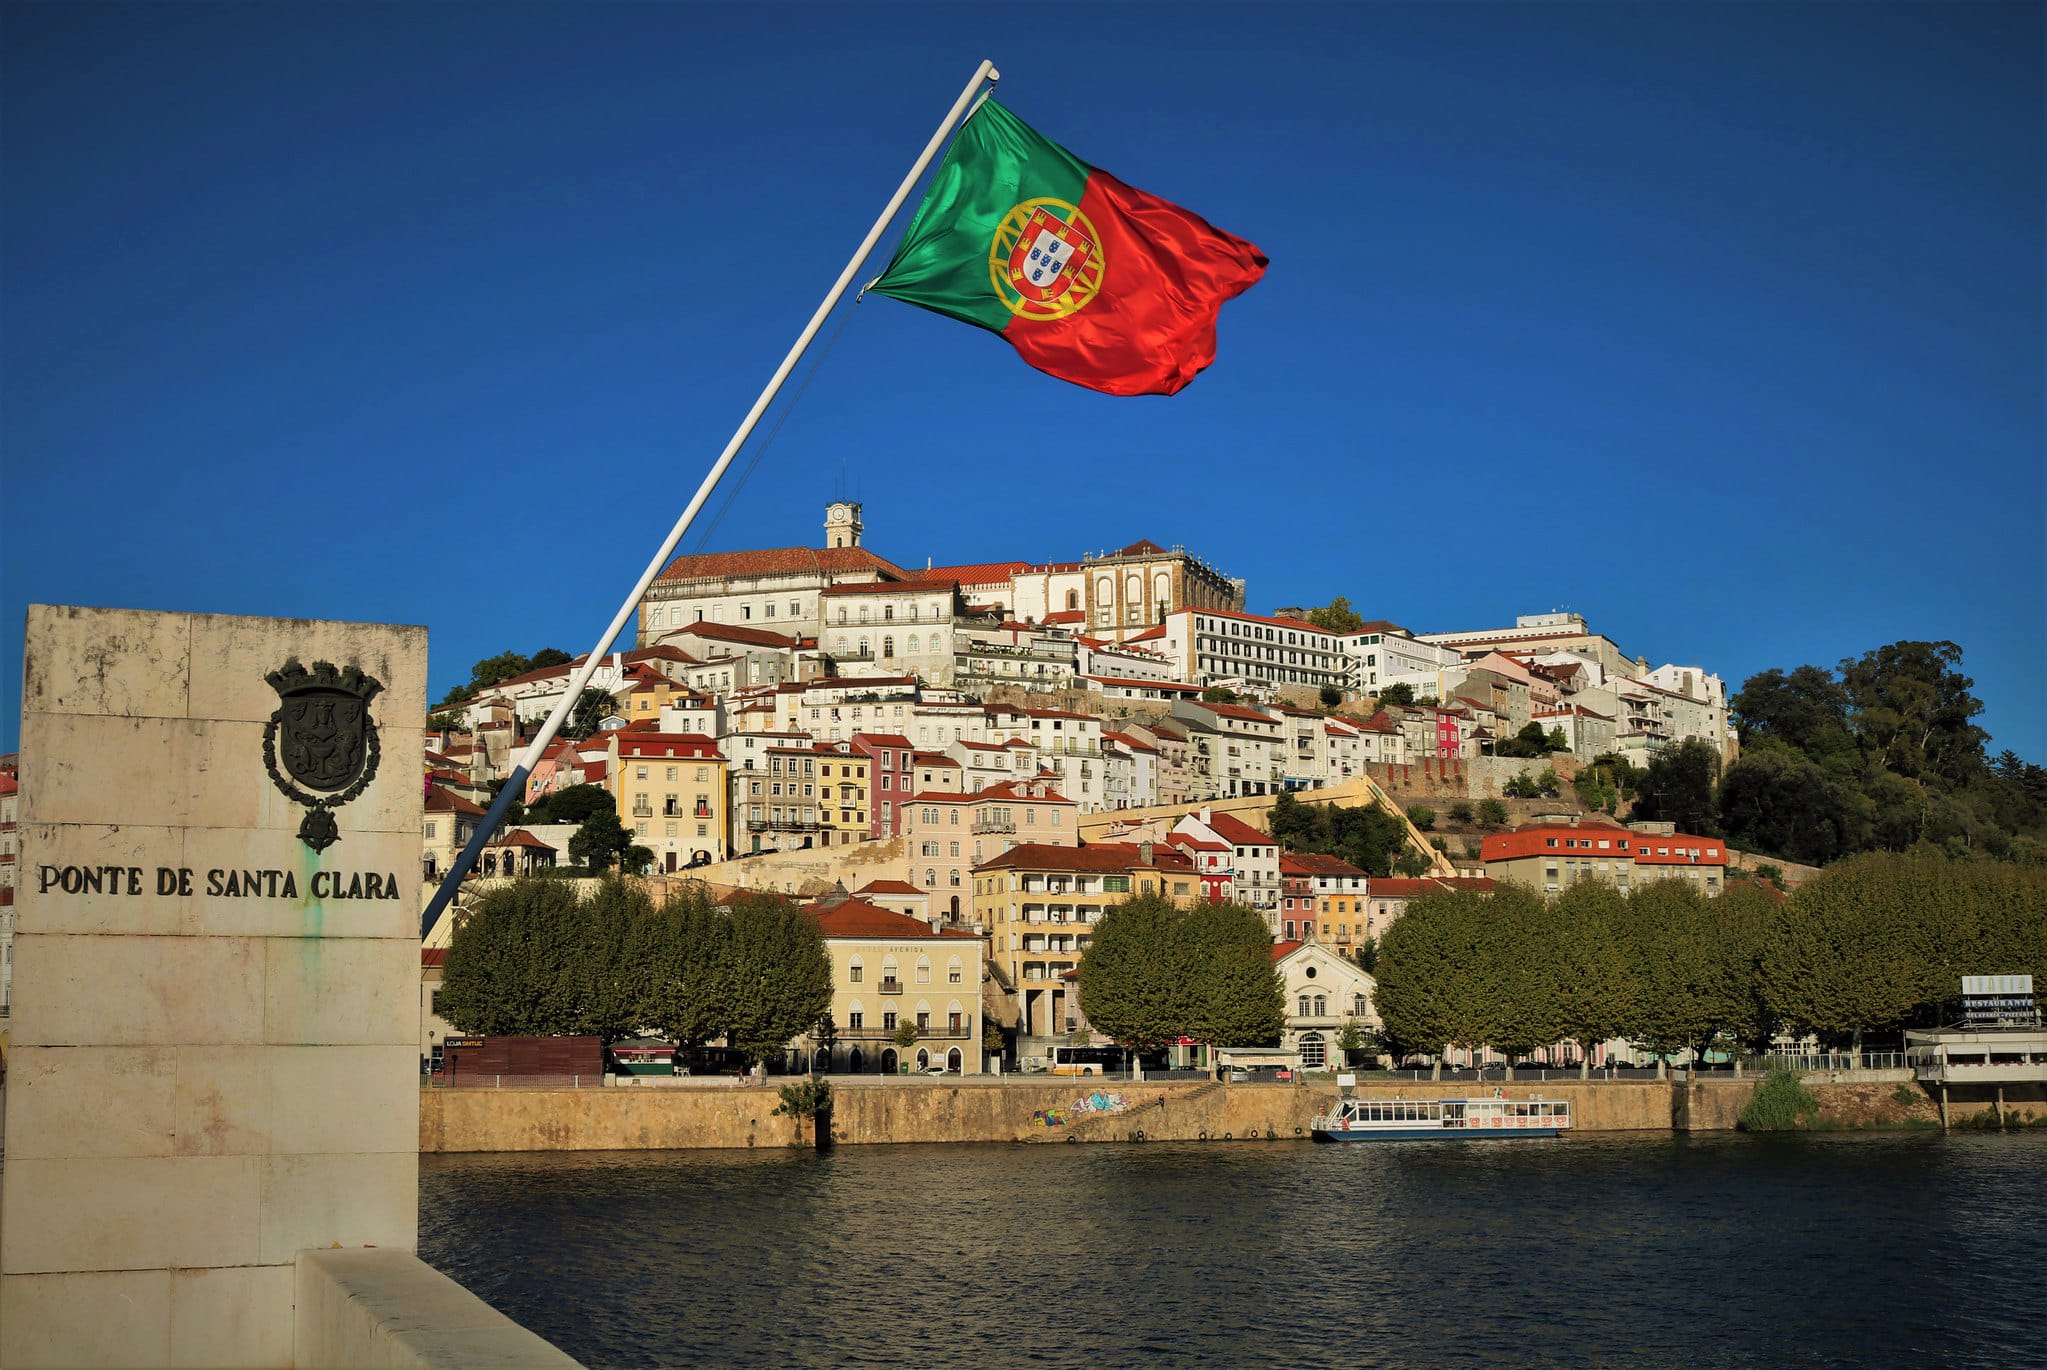 Португальский государственный страны. Португалия город и флаг. Северо Восток Португалии. Вторая Республика Португалия. День Республики в Португалии.